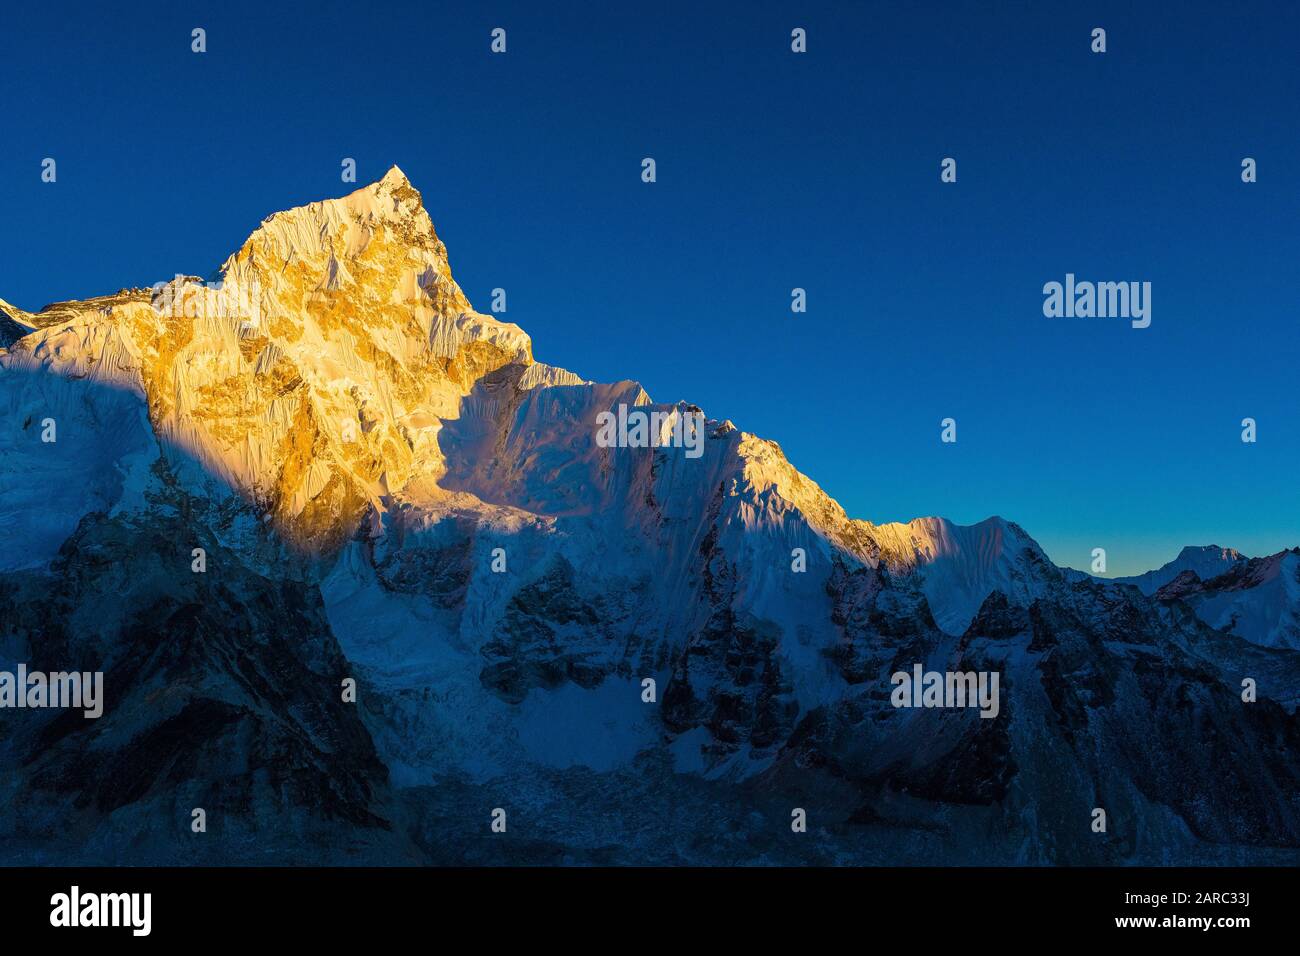 Spitze Himalaya-Spitze ( Nuptse ) bei Sonnenuntergang, Khumbu, Nepal Himalaya Stockfoto